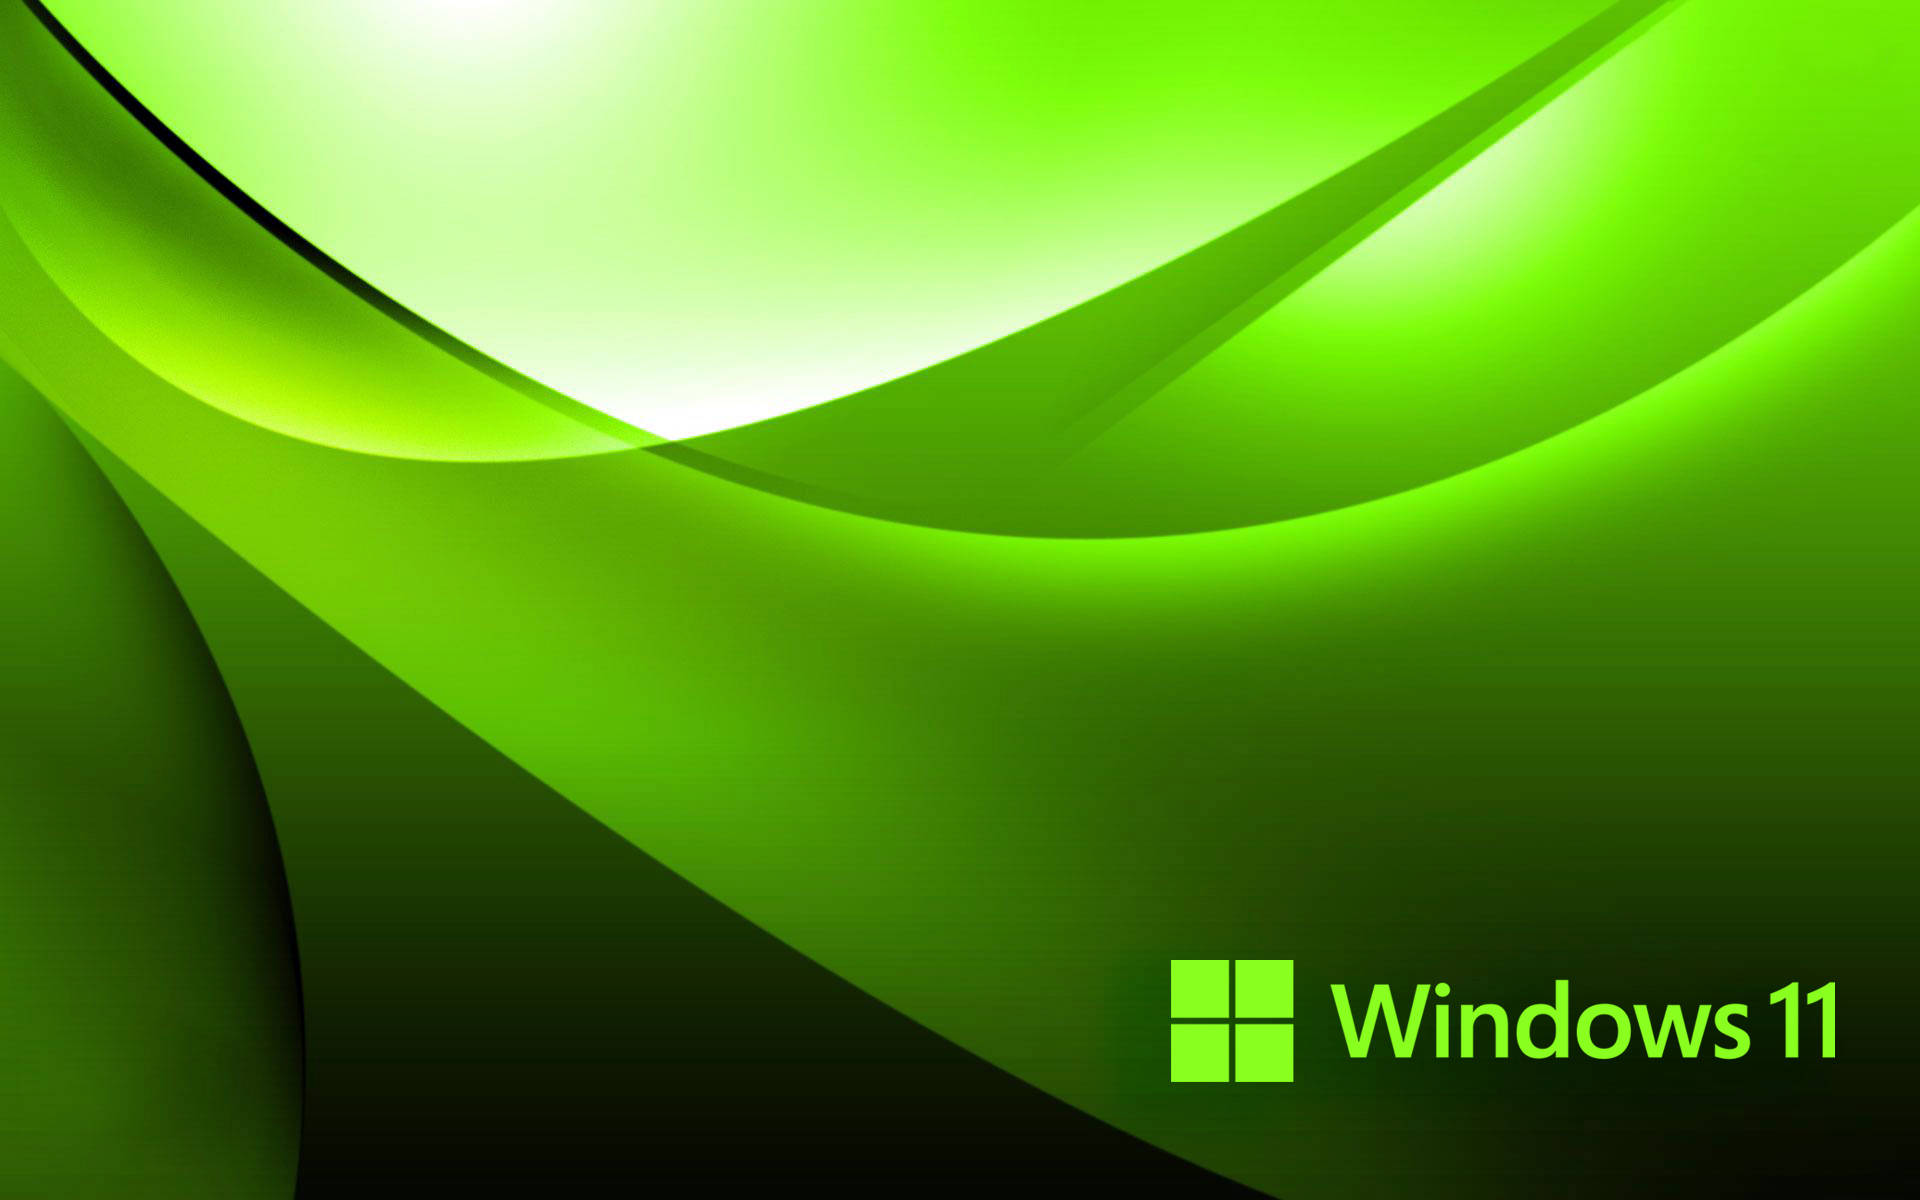 Một bộ sưu tập hình nền Windows 11 Green Wallpaper độc đáo và mang phong cách hiện đại đang ở đây - Wallpapers.com. Đây là nơi lý tưởng để tìm kiếm những hình nền đẹp nhất cho chiếc máy tính của bạn. Hãy nhấp chuột vào hình ảnh liên quan để có những trải nghiệm tuyệt vời nhé!